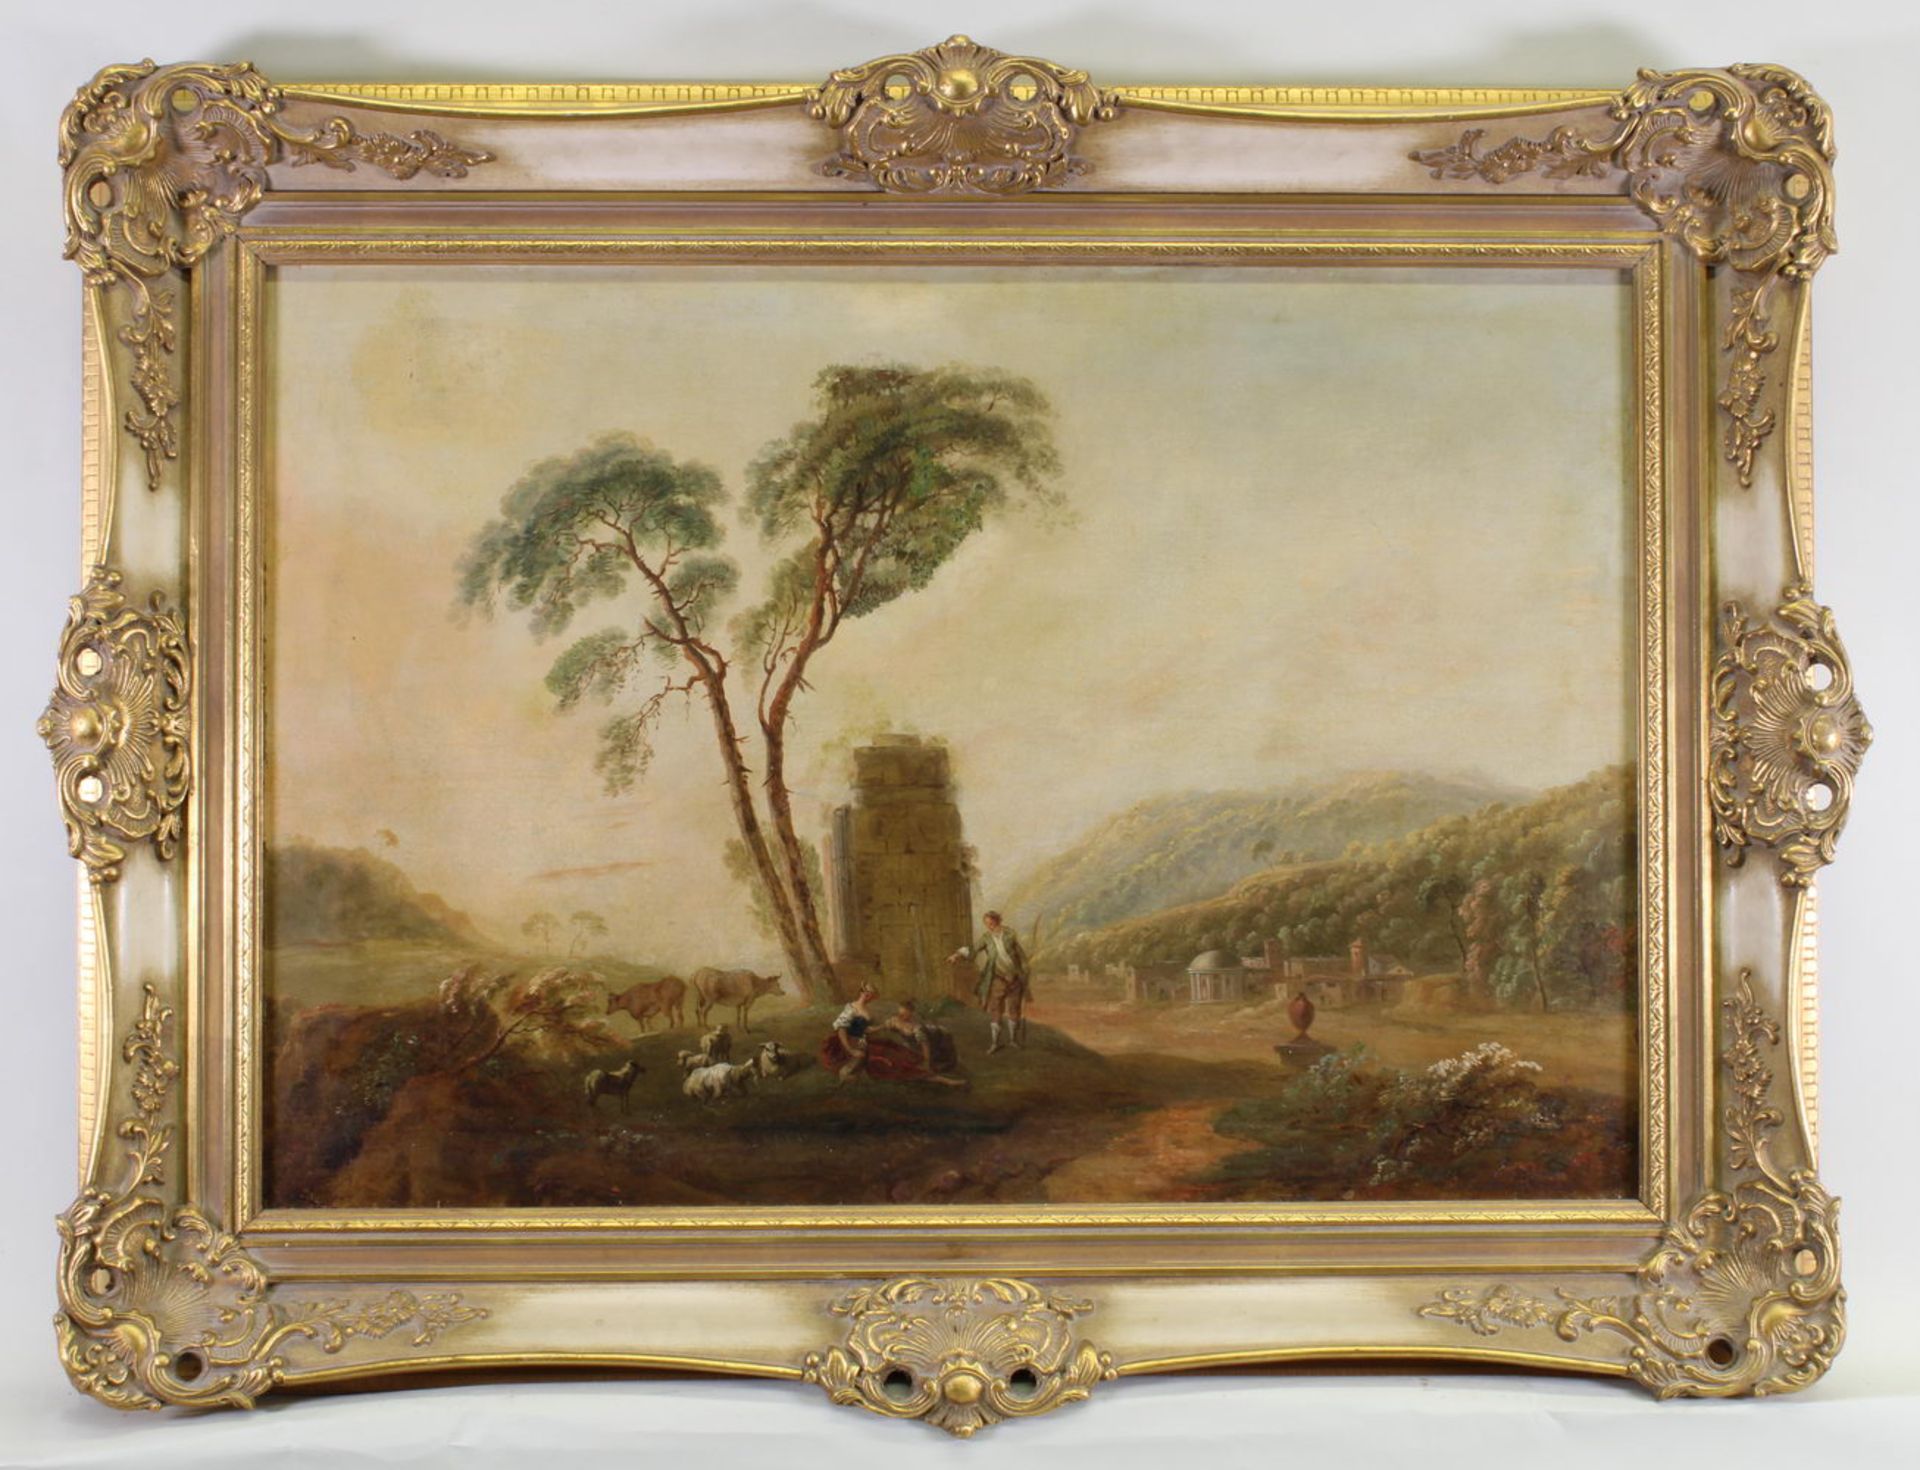 Landschaftsmaler (18./19. Jh.), "Arkadische Landschaft mit Hirten vor Ruine", Öl auf Leinwand, sig - Image 2 of 4